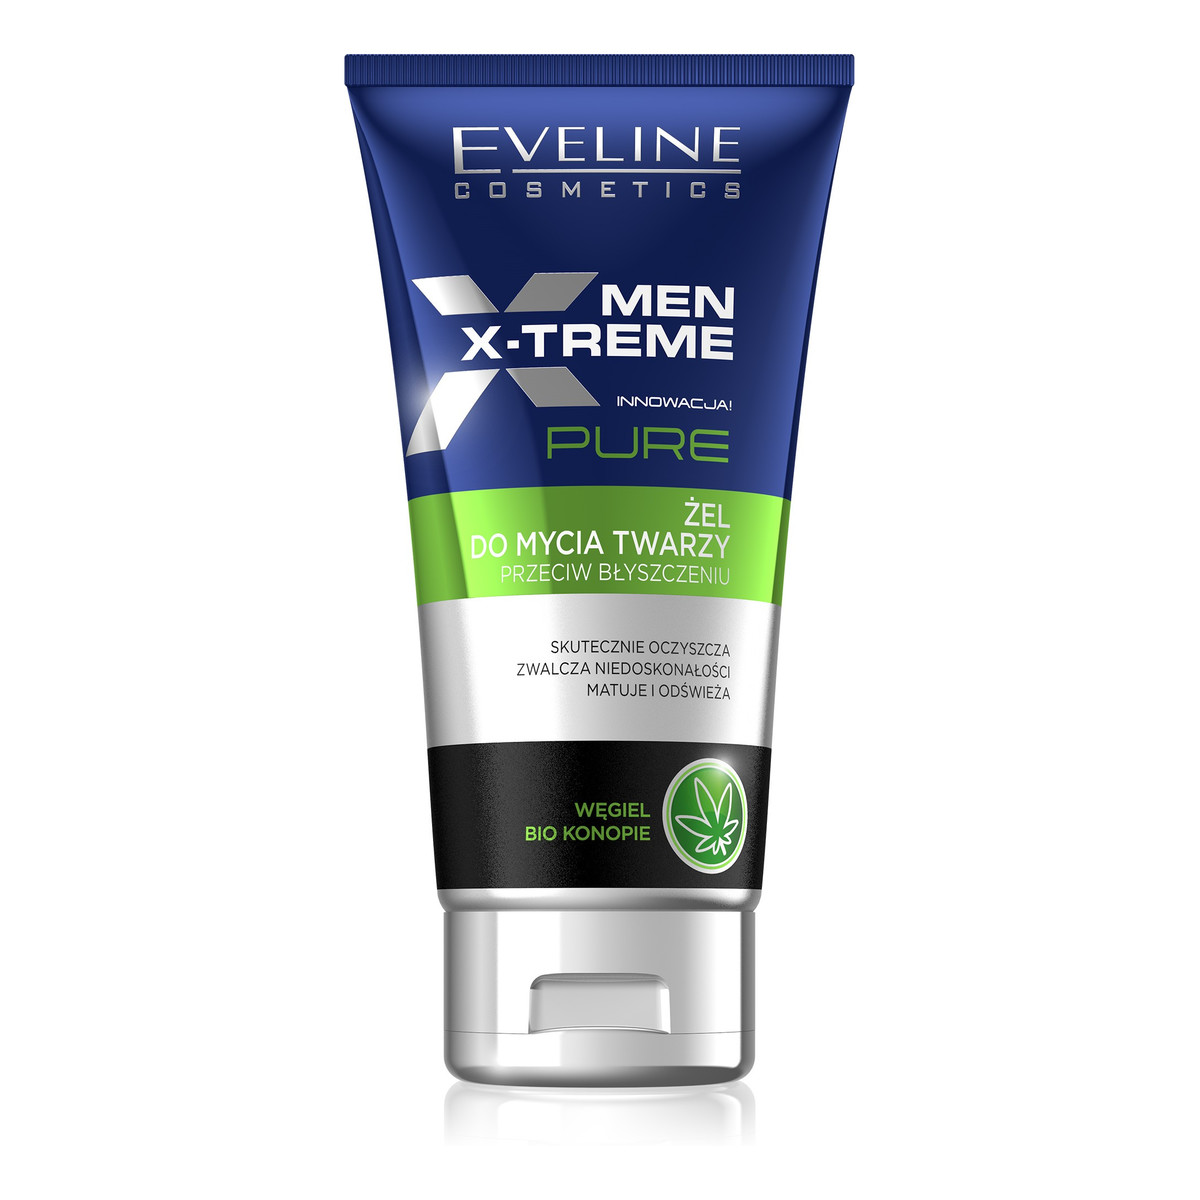 Eveline Men X-Treme Pure Żel do mycia twarzy przeciw błyszczeniu 125ml